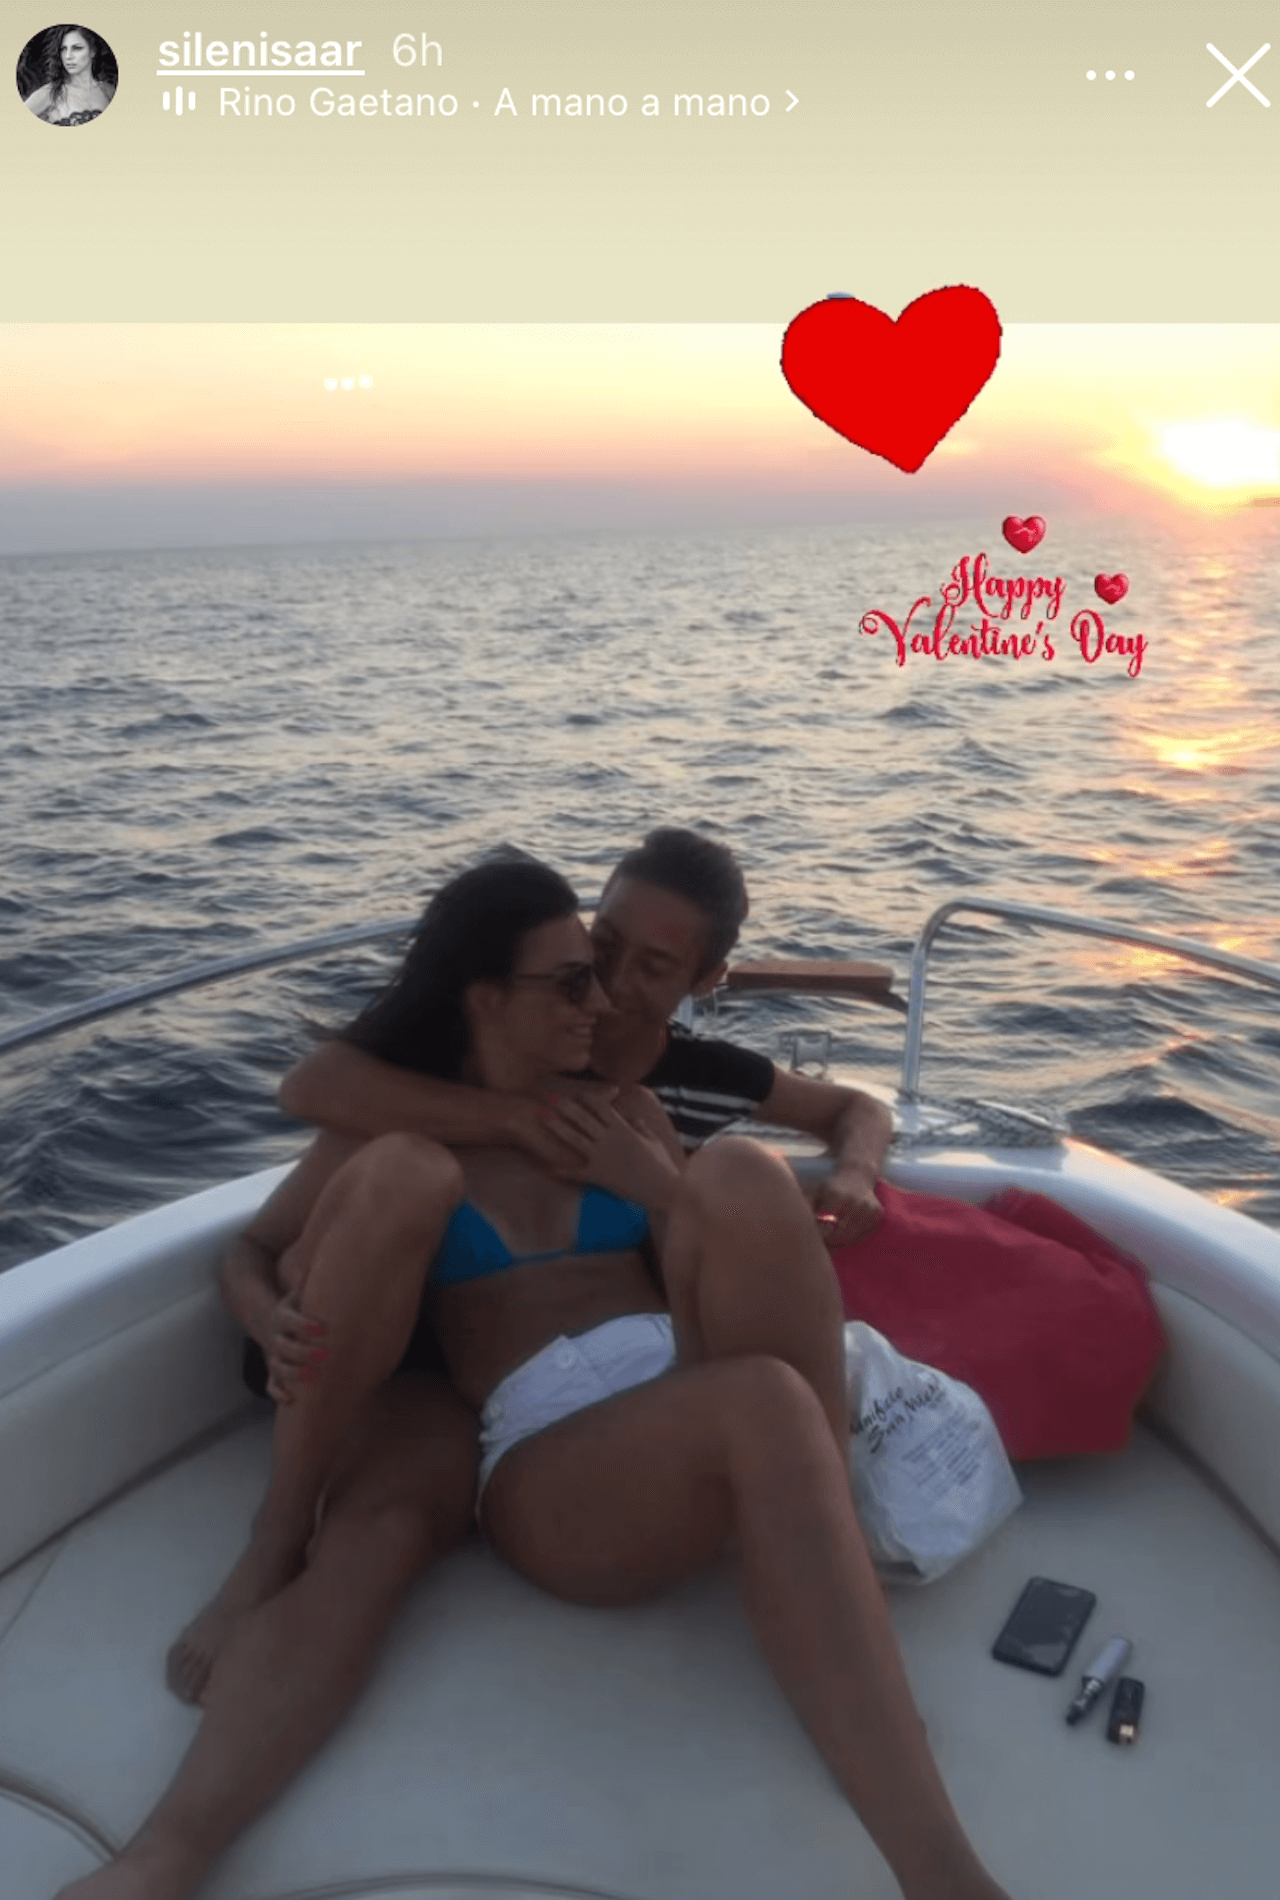 Francesca Schiavone festeggia San Valentino con l’amata Sileni: “Sempre insieme” - Francesca Schiavone e Sileni 2 - Gay.it